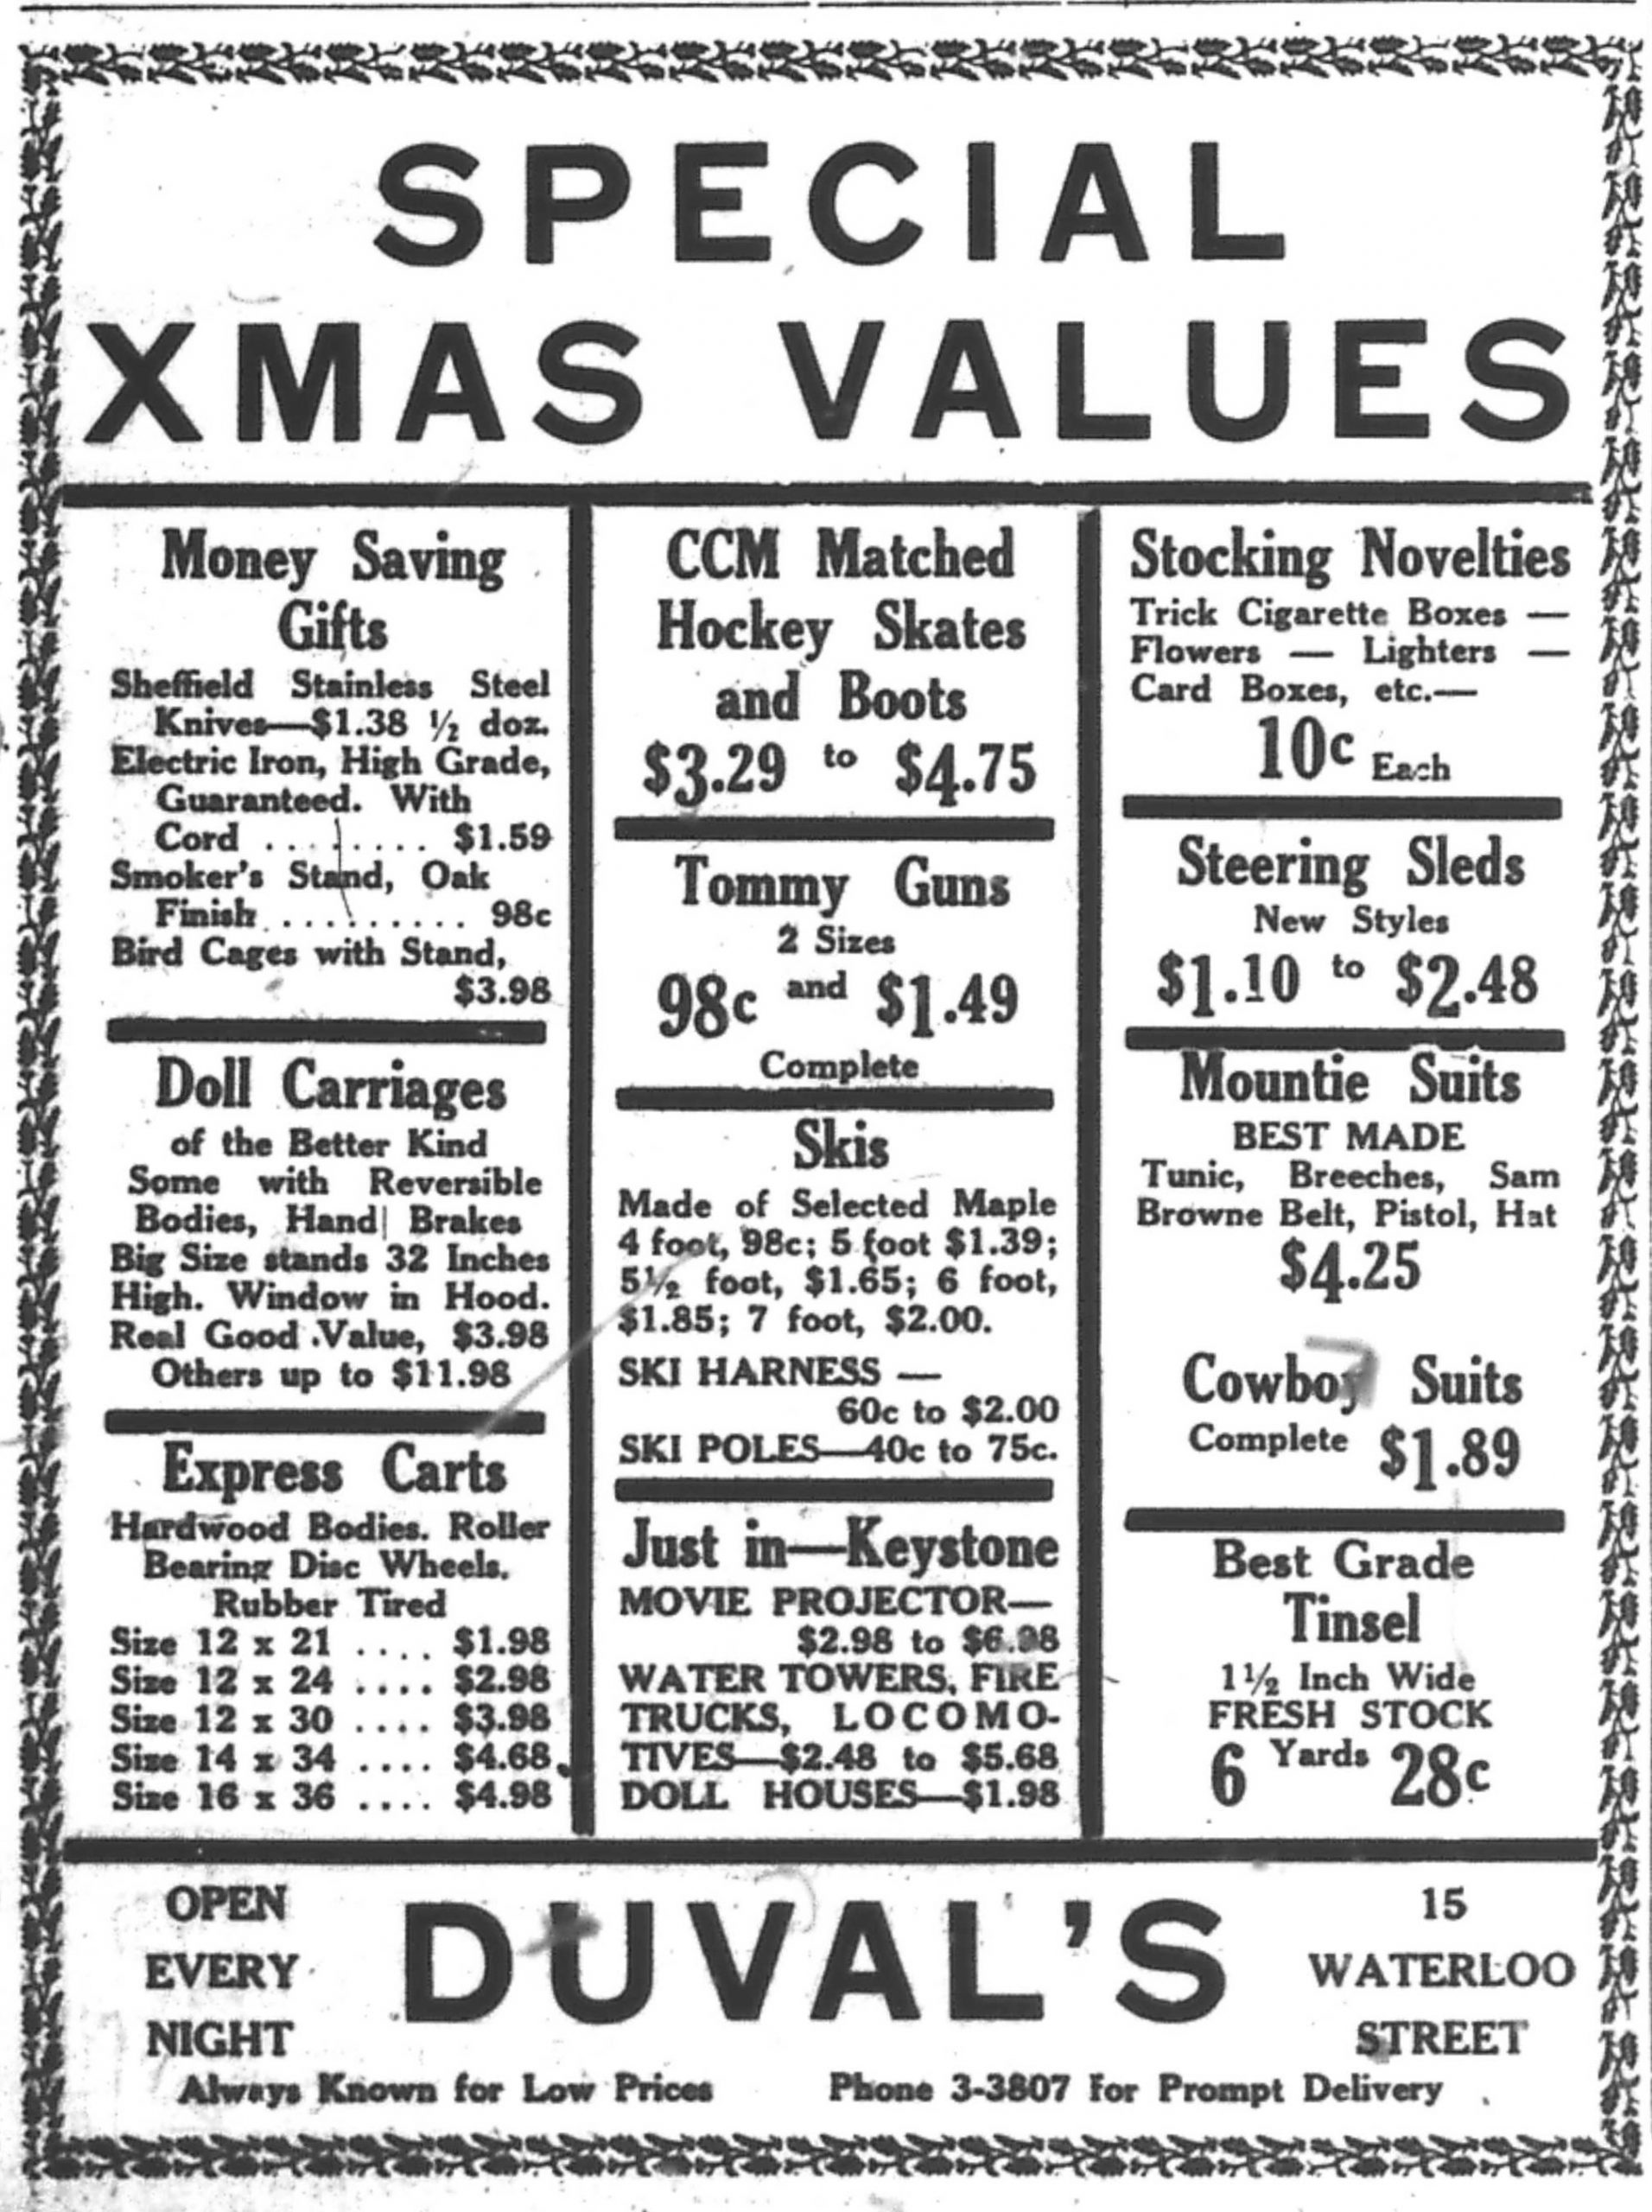 Publicité de presse intitulée « Special Christmas Values - Duval’s » contenant une liste de suggestions de cadeaux, dont des voitures de poupées, des patins, des traîneaux et des « costumes de police montée ».